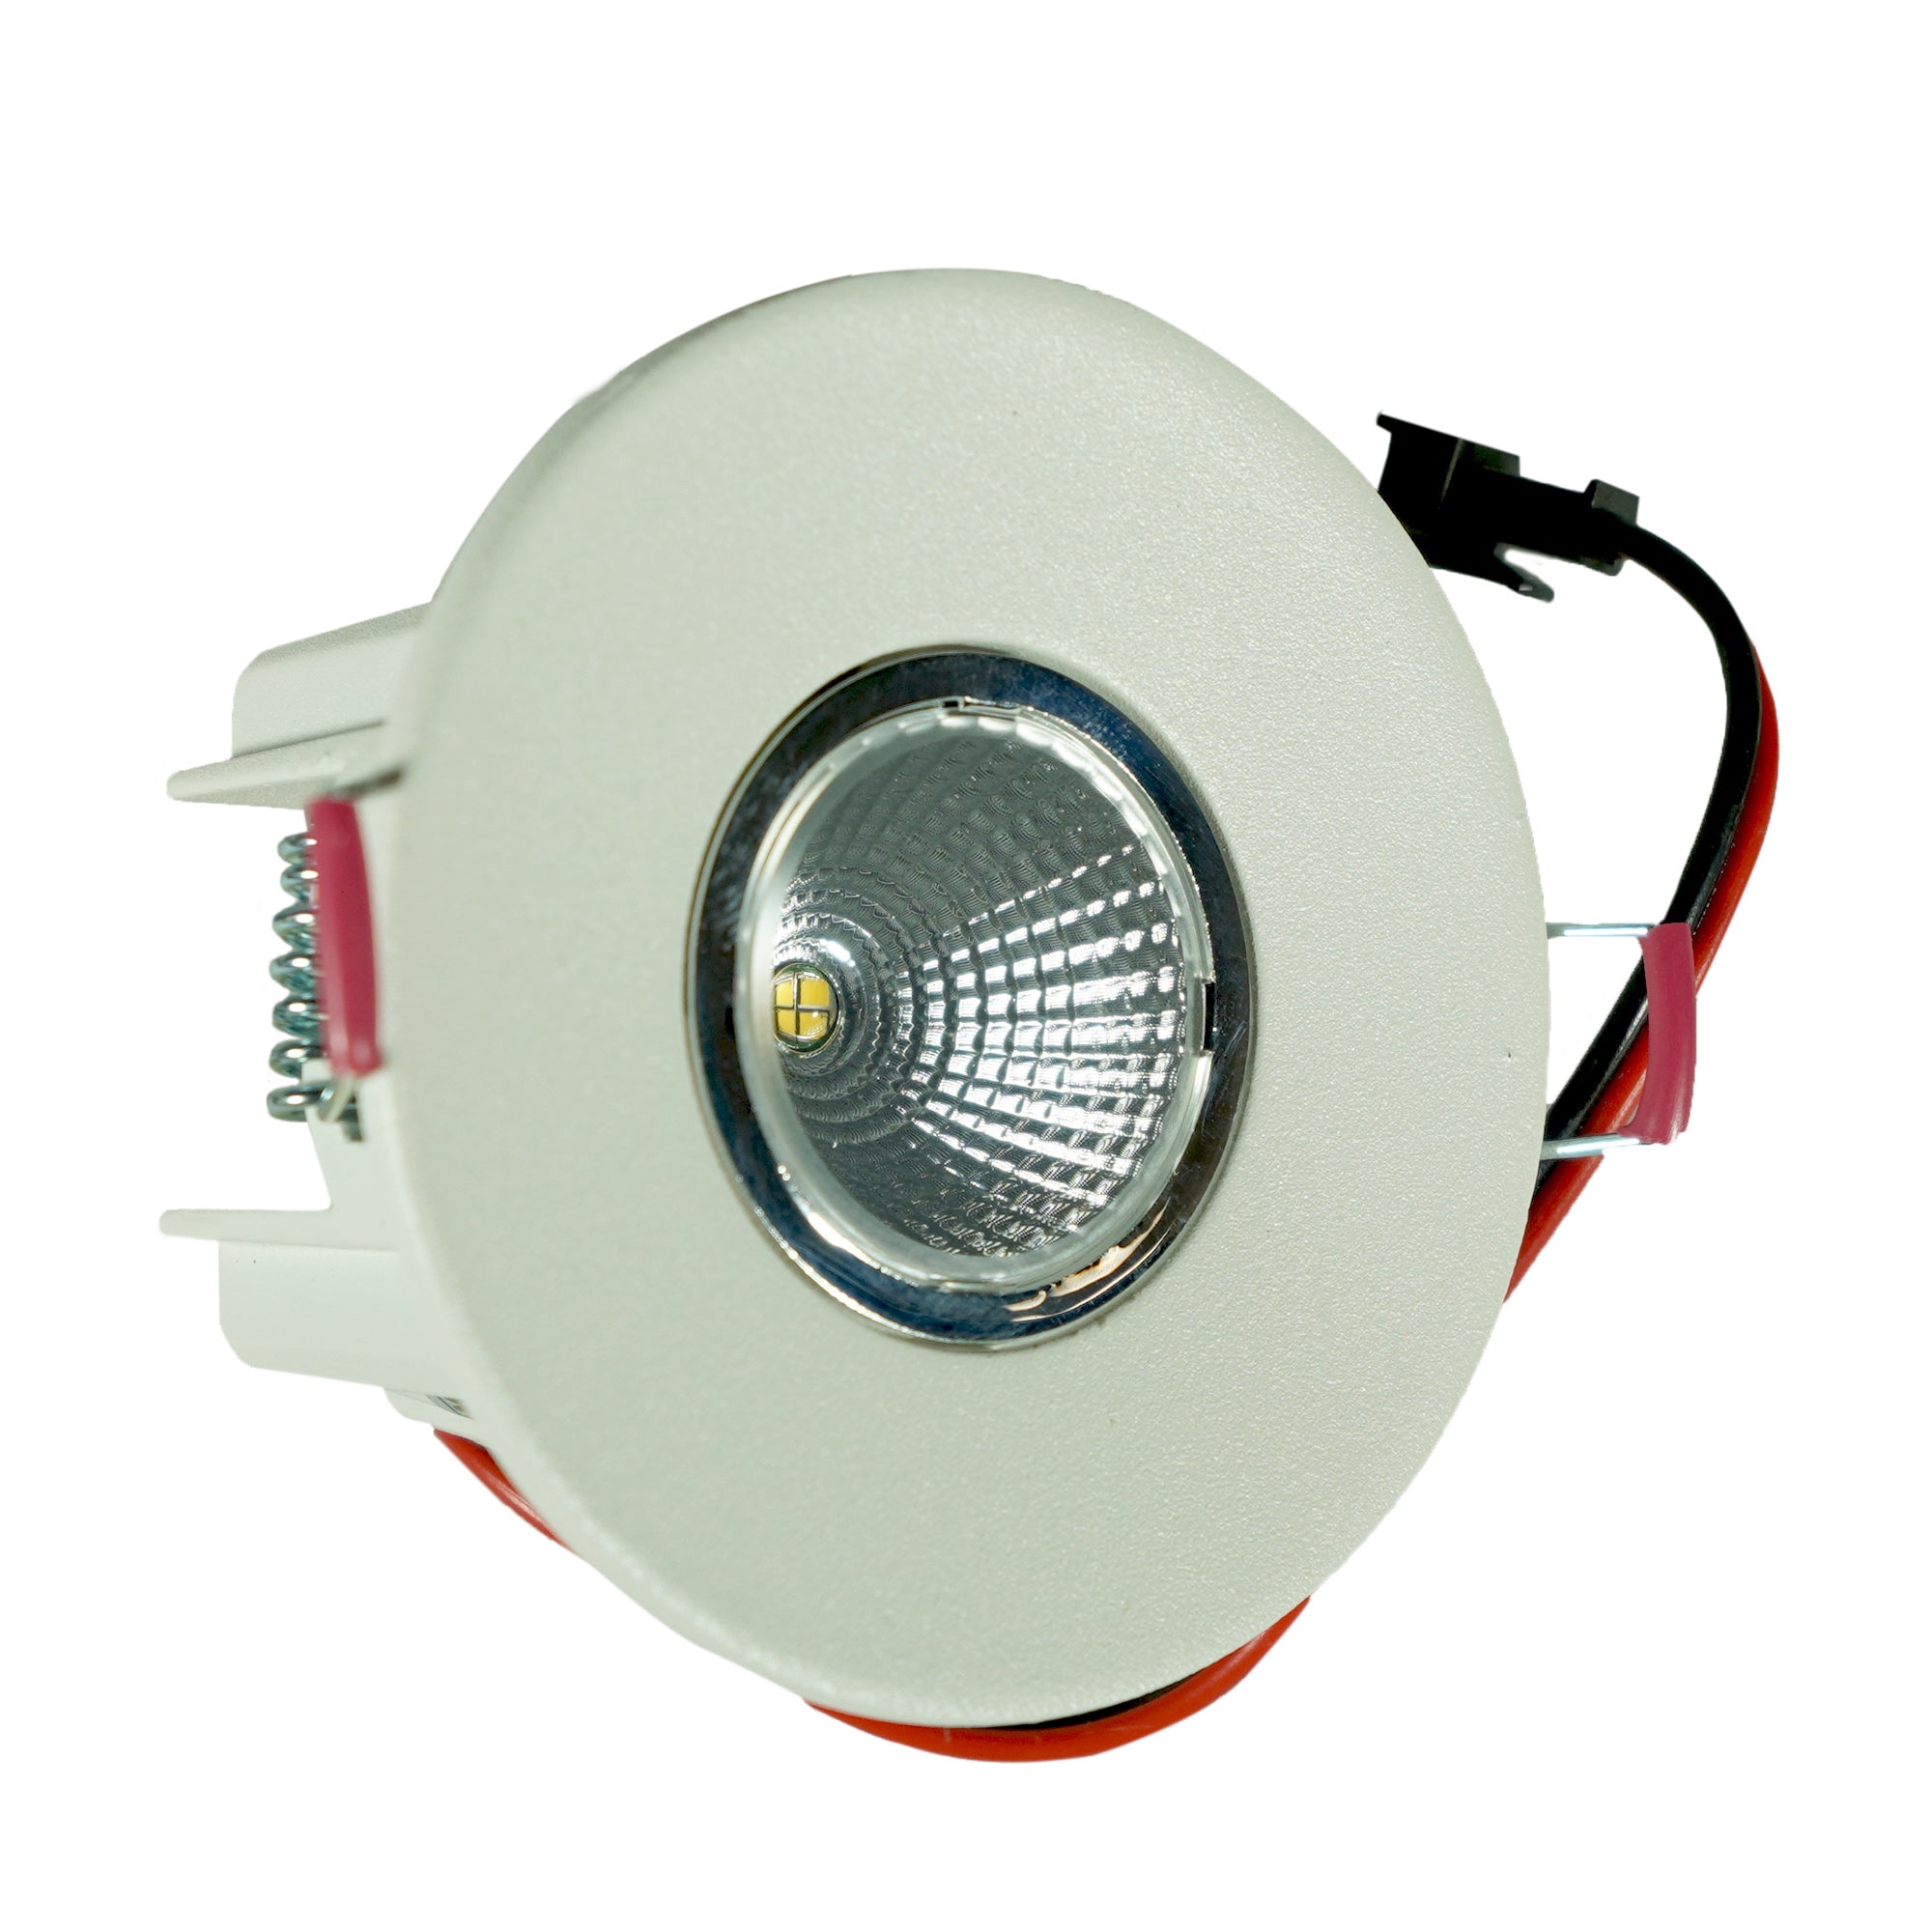 Luminario downlight LED redondo para empotrar en techo TL-4340.B